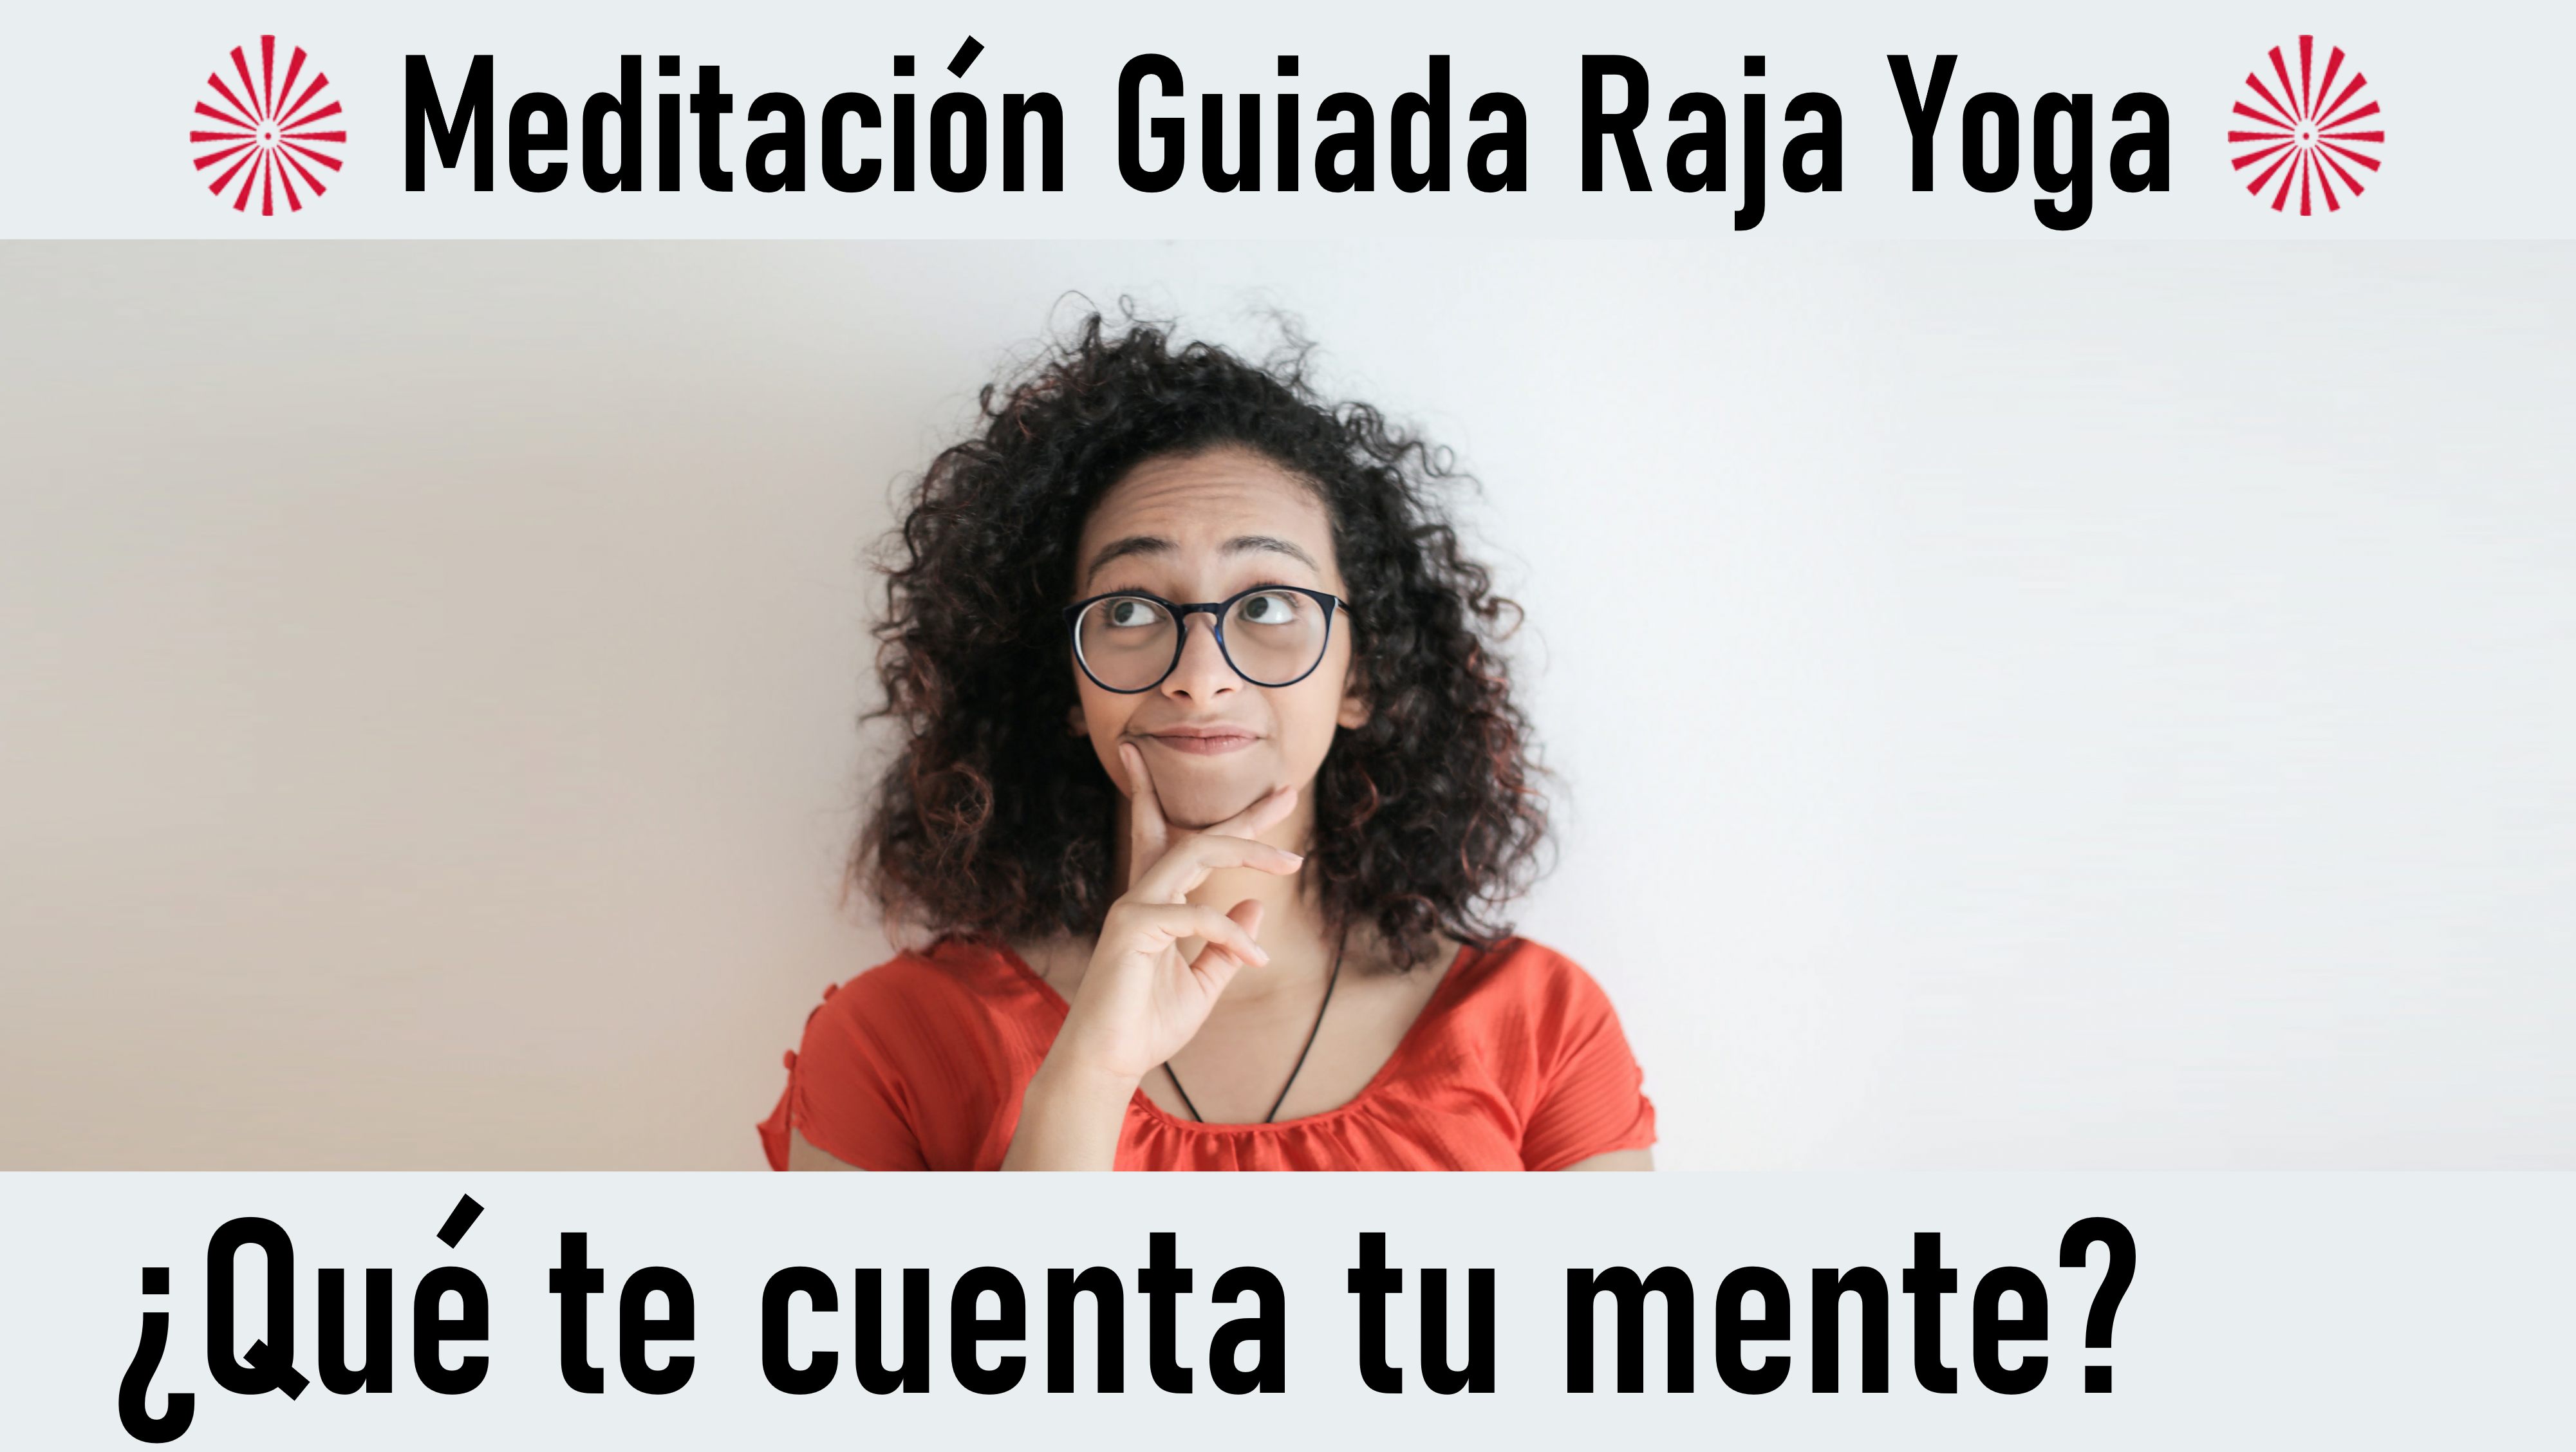 Meditación Raja Yoga: ¿Qué te cuenta tu mente? (21 Septiembre 2020) On-line desde Madrid